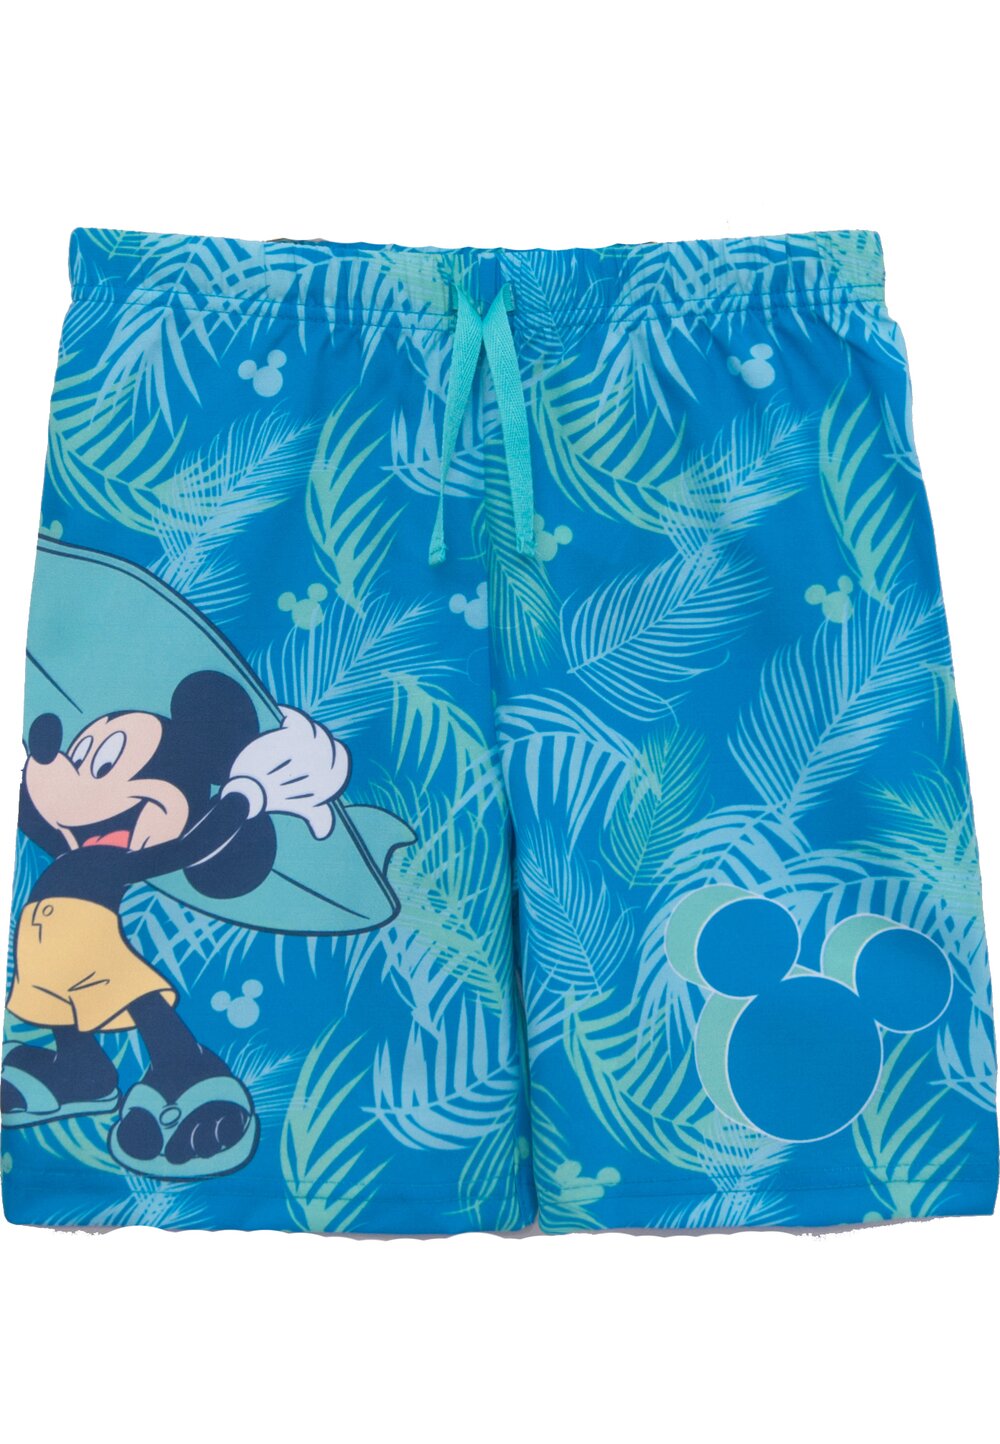 Bermude baie, Mickey Mouse, albastru cu verde DISNEY